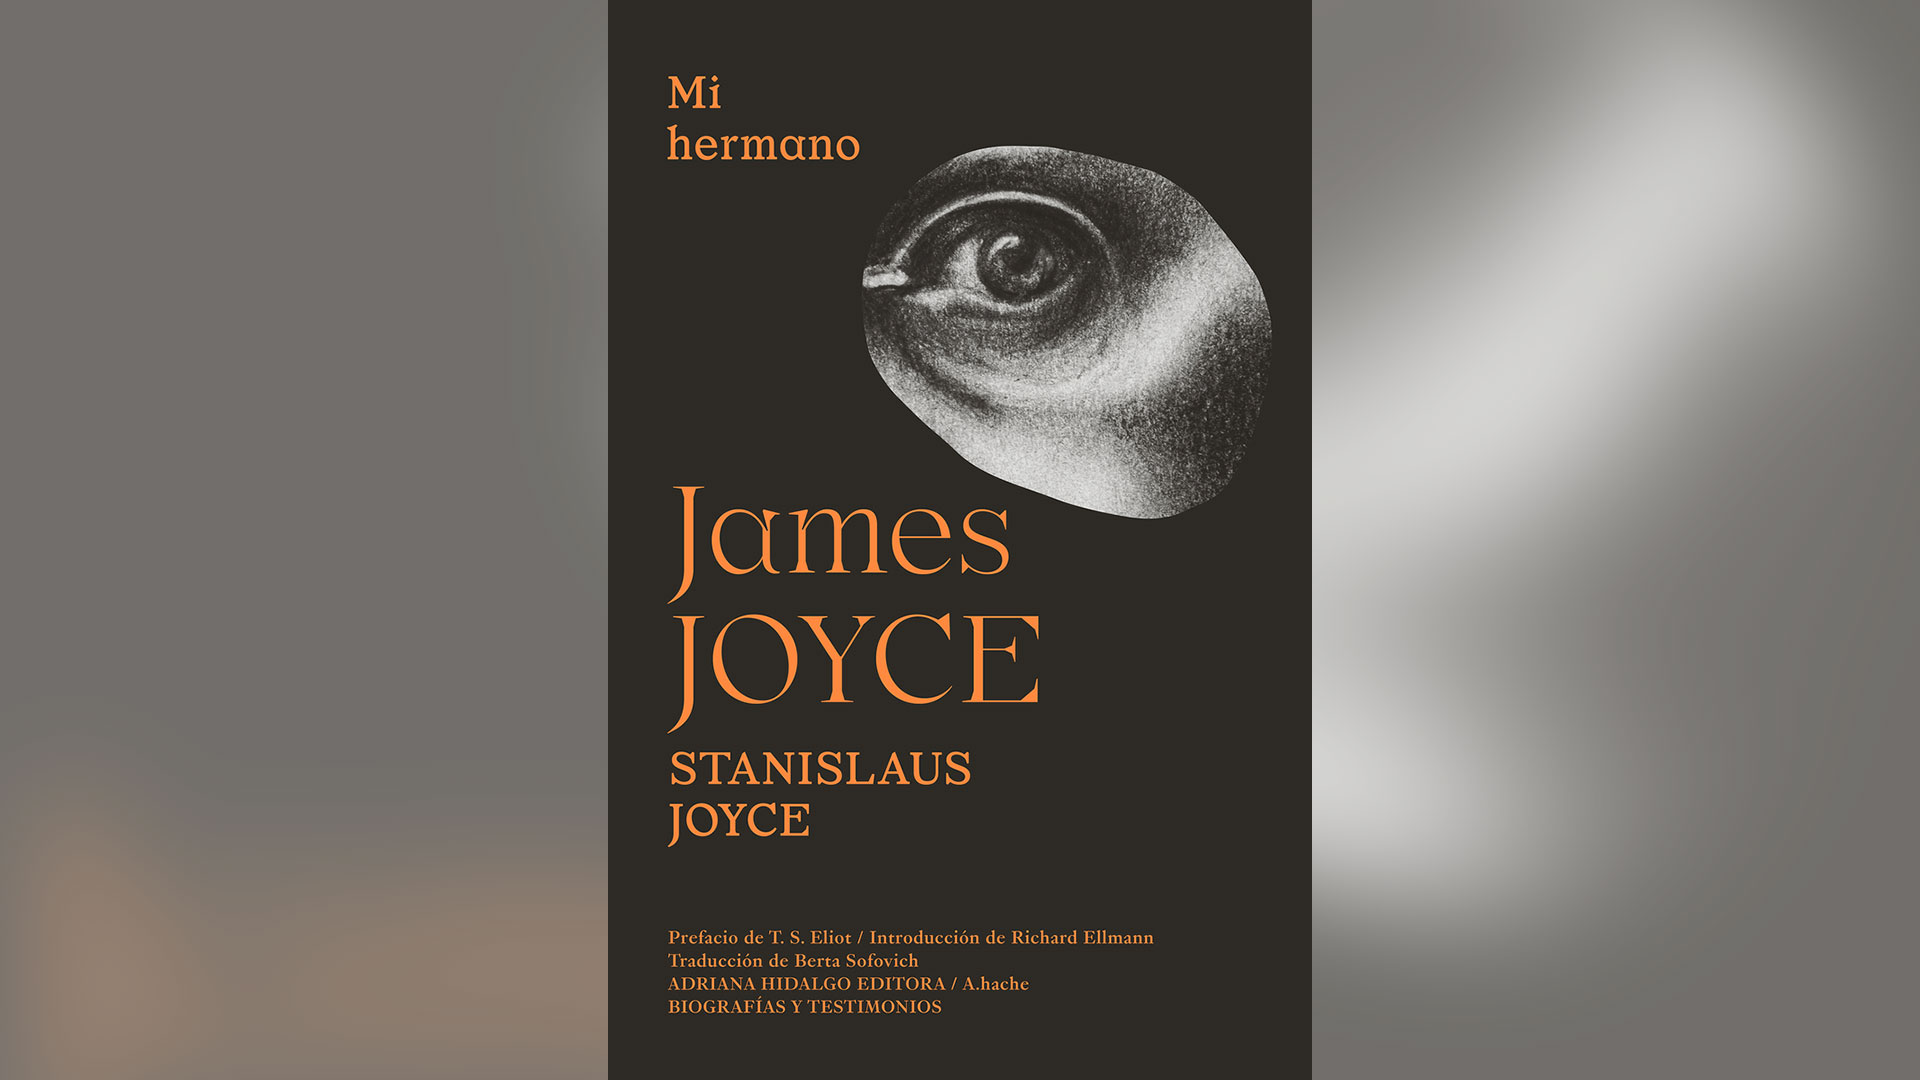 Mi hermano James Joyce fue editado por el sello Adriana Hidalgo.